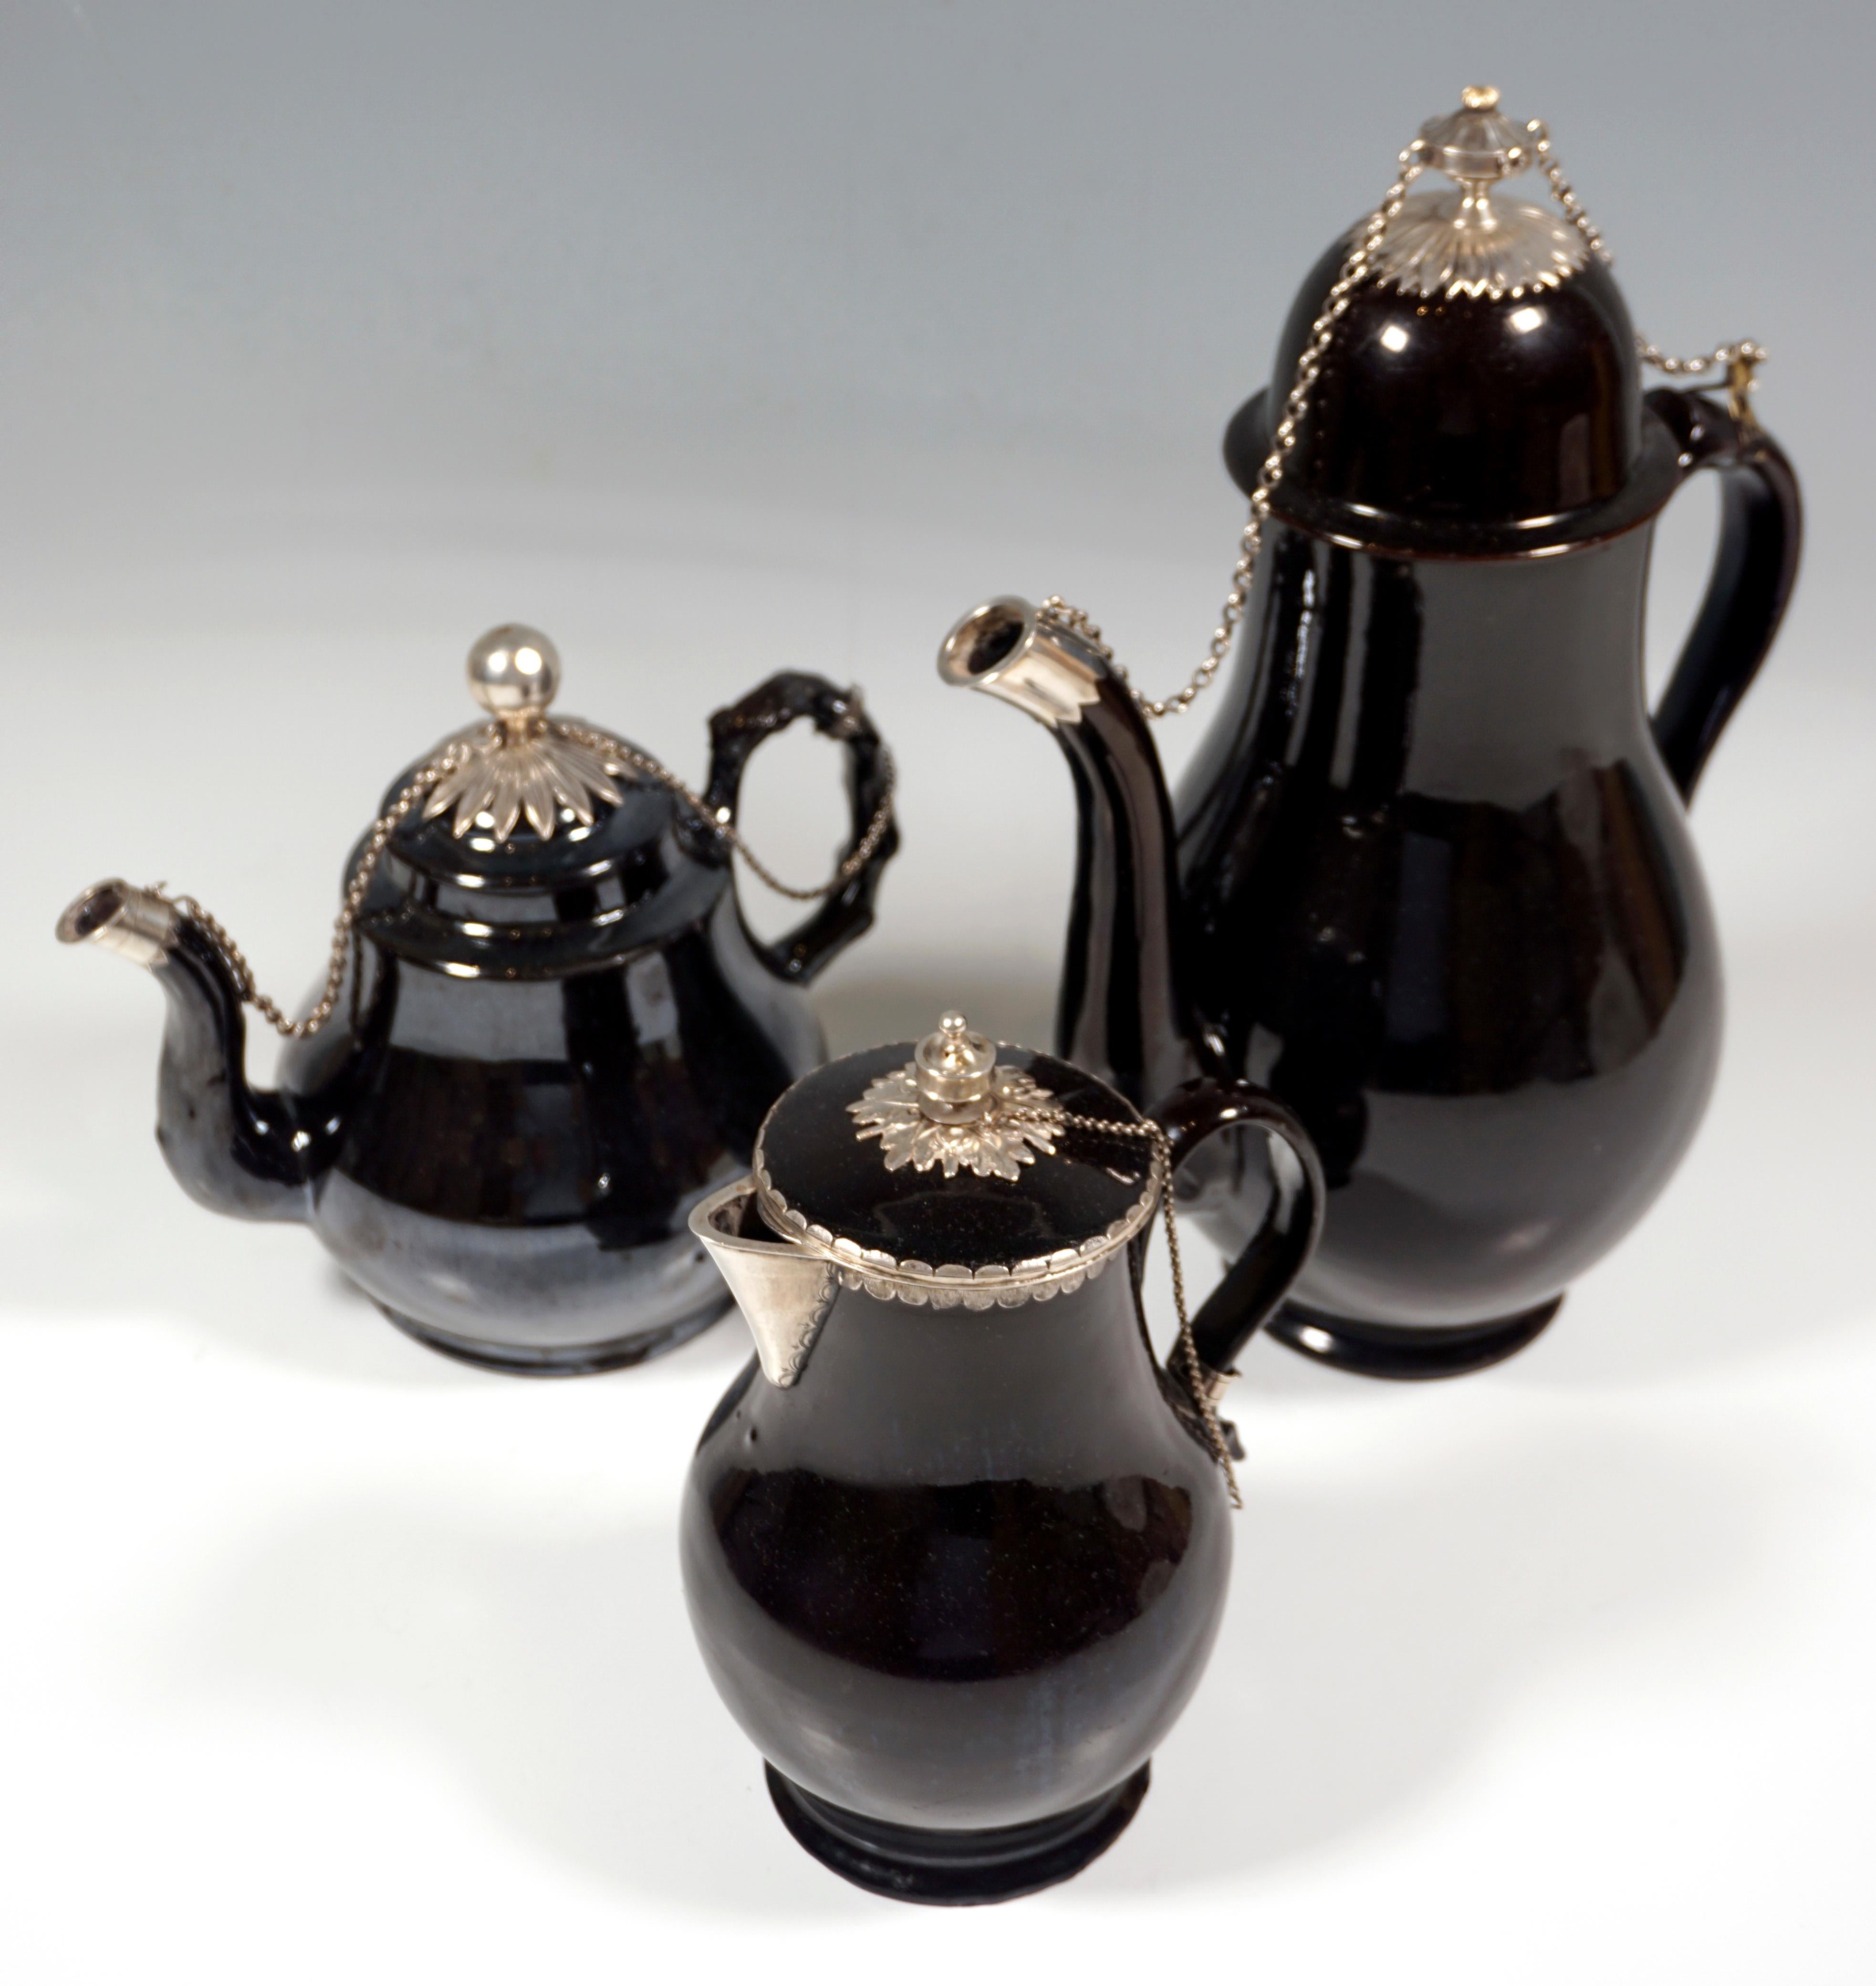 Dreiteiliges Kernstück bestehend aus Kaffeekanne, Teekanne und Milchkännchen aus Terre de Namur-Keramik.

Terre de Namur
Die feine schwarze Fayence ist ein besonderes Produkt aus Namur, Belgien, Ende des 18. Jahrhunderts. Es handelt sich um eine